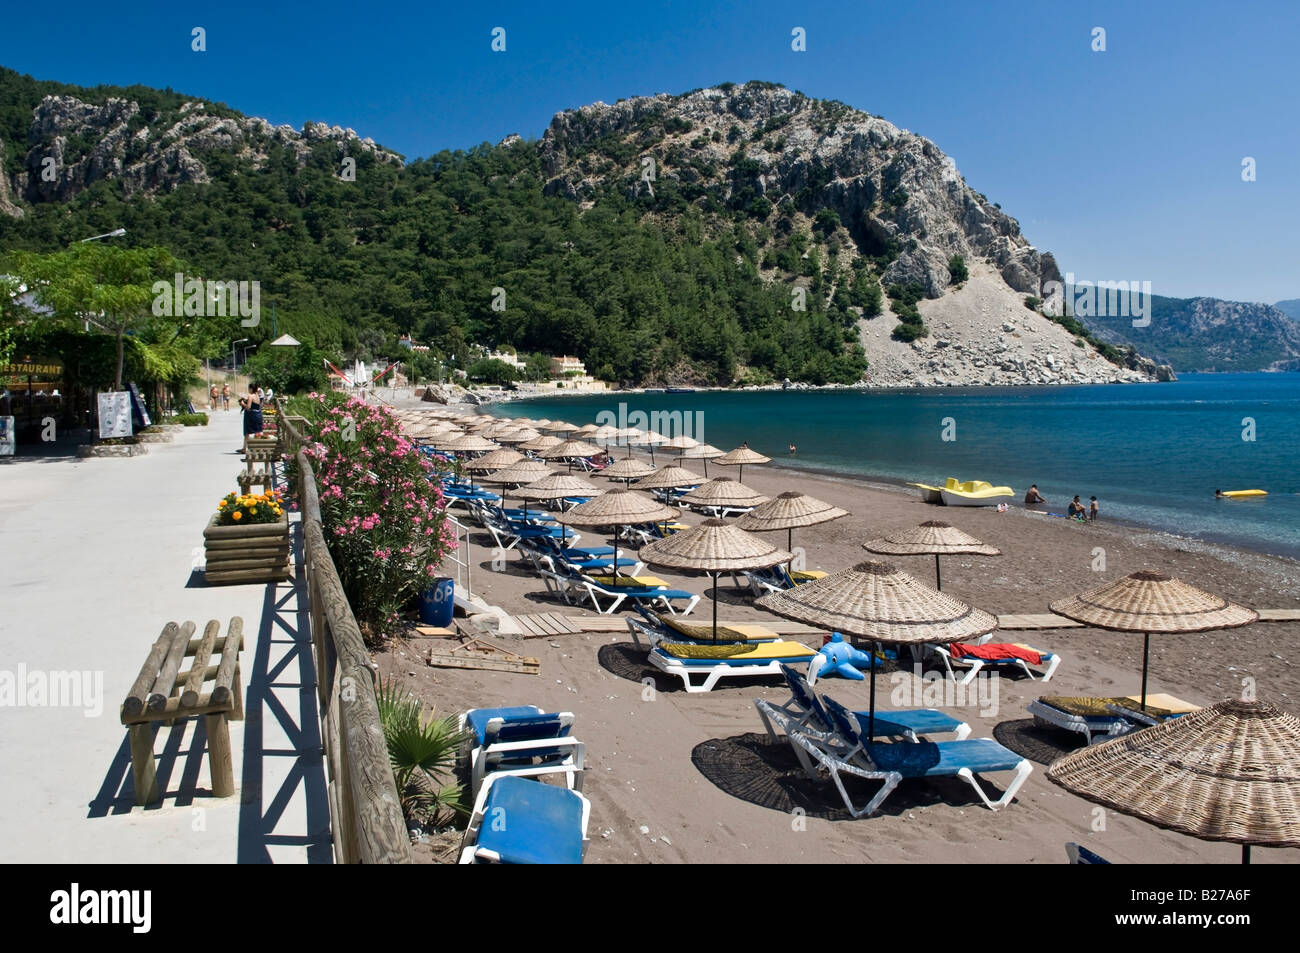 Beach in resort town of Turunc Mugla Turkey Stock Photo